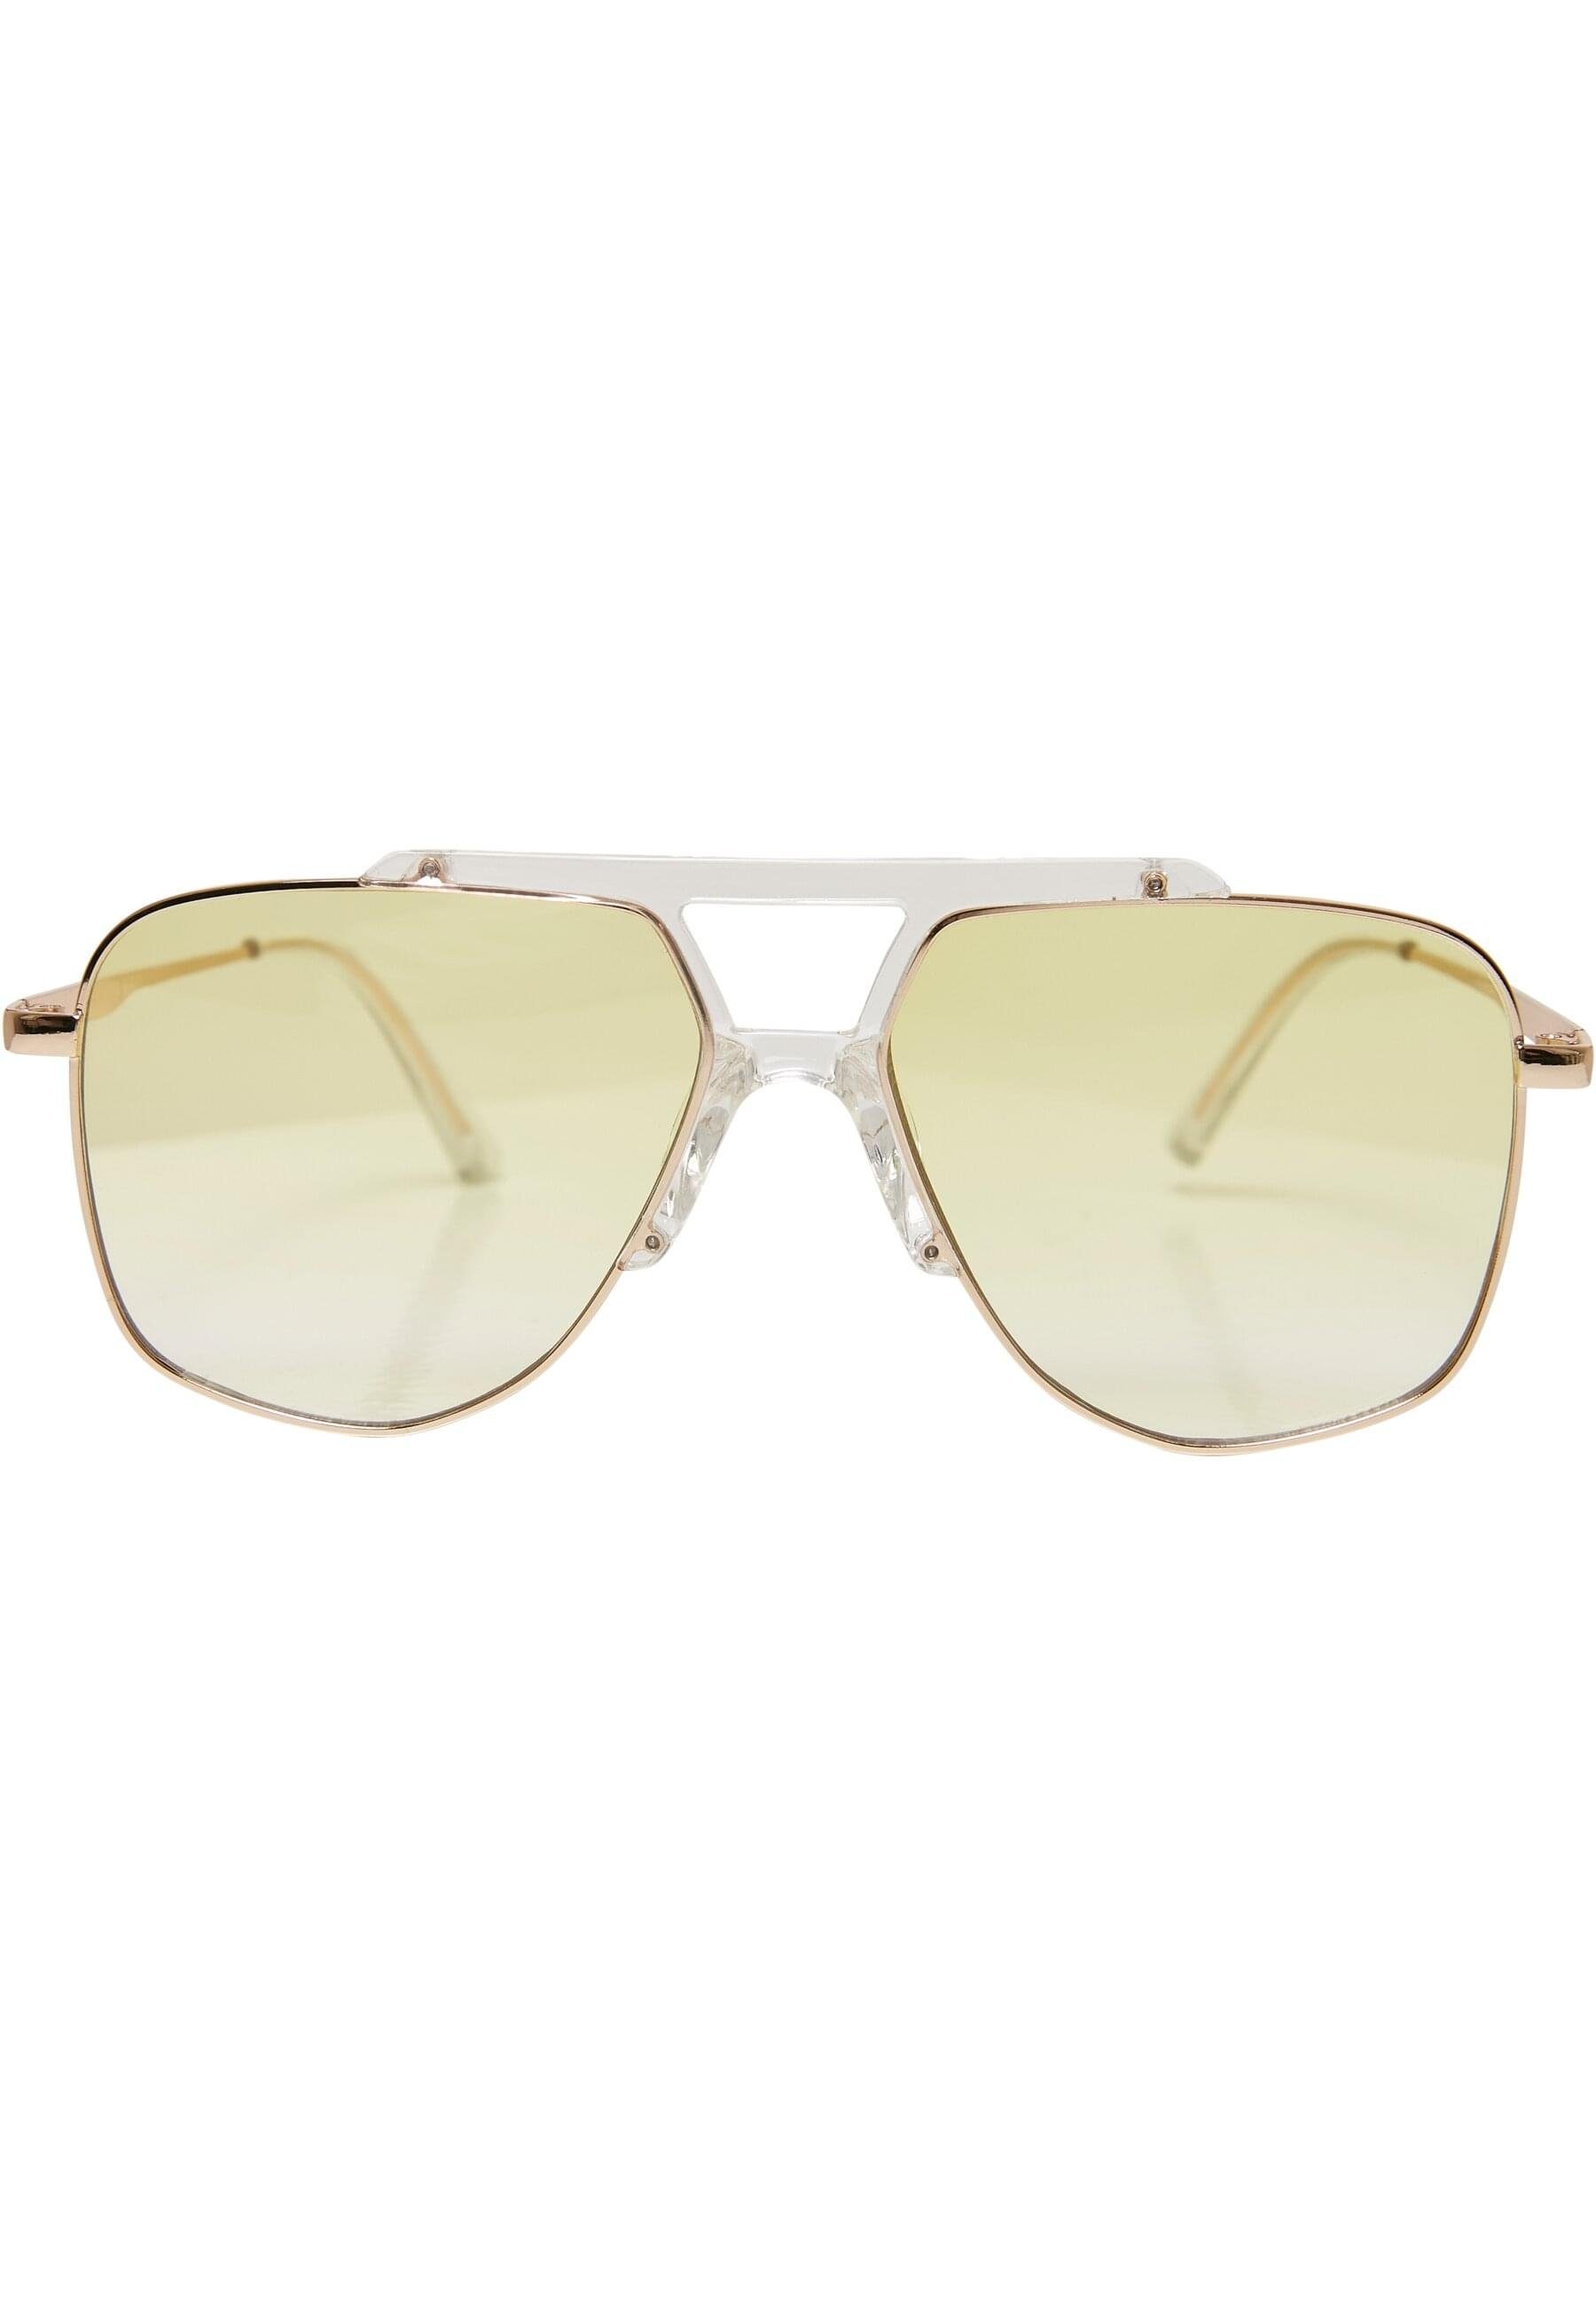 Unisex Sonnenbrille URBAN Sunglasses Tropez CLASSICS transparent/gold Saint